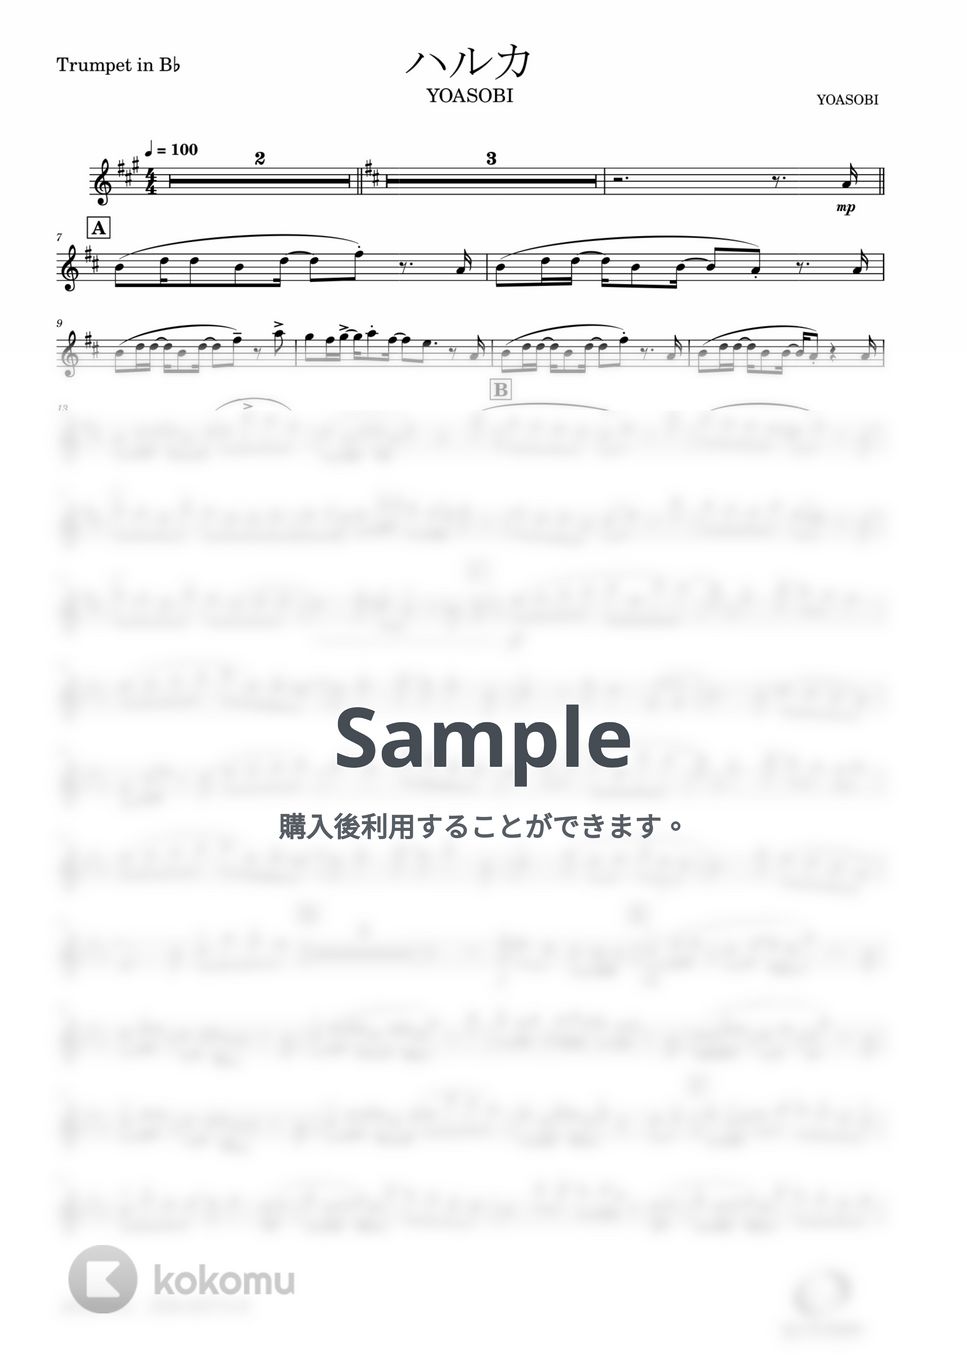 YOASOBI - ハルカ (Trumpetsolo) by Windworld